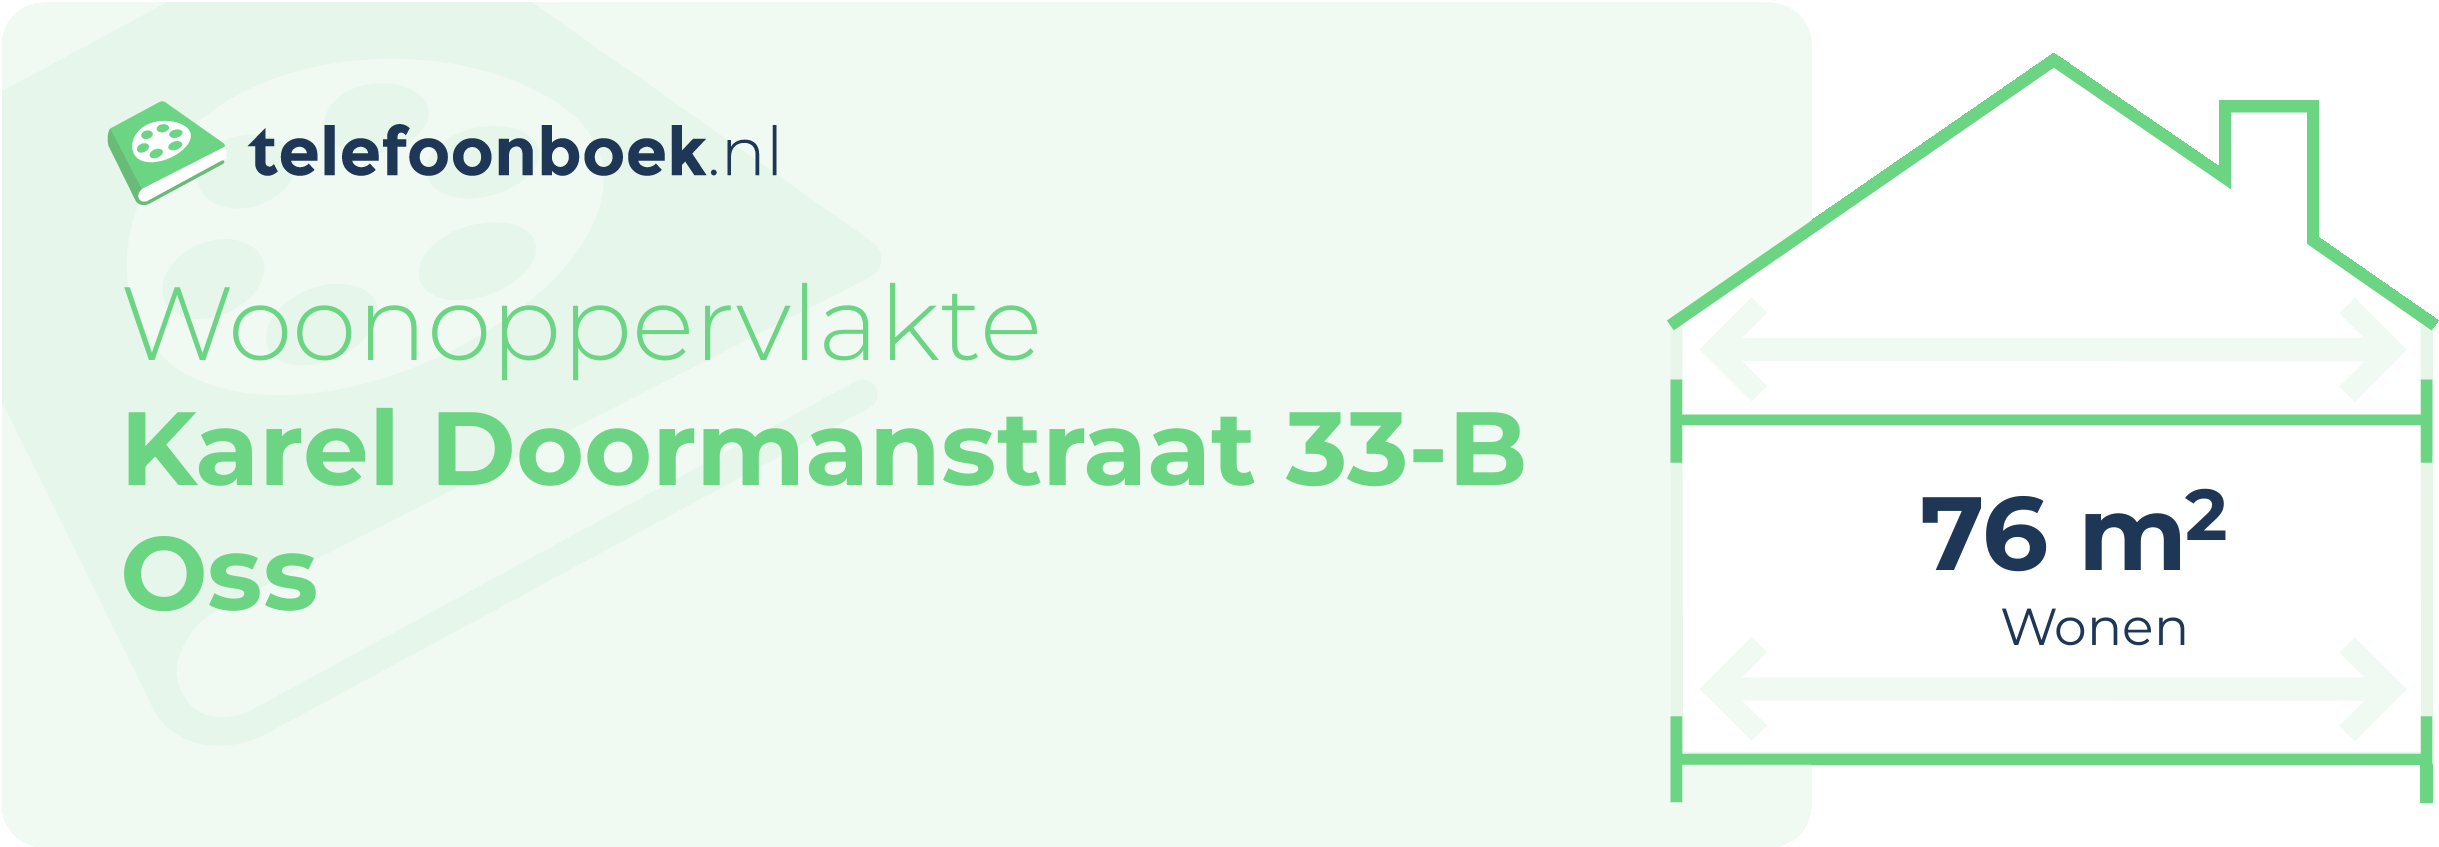 Woonoppervlakte Karel Doormanstraat 33-B Oss